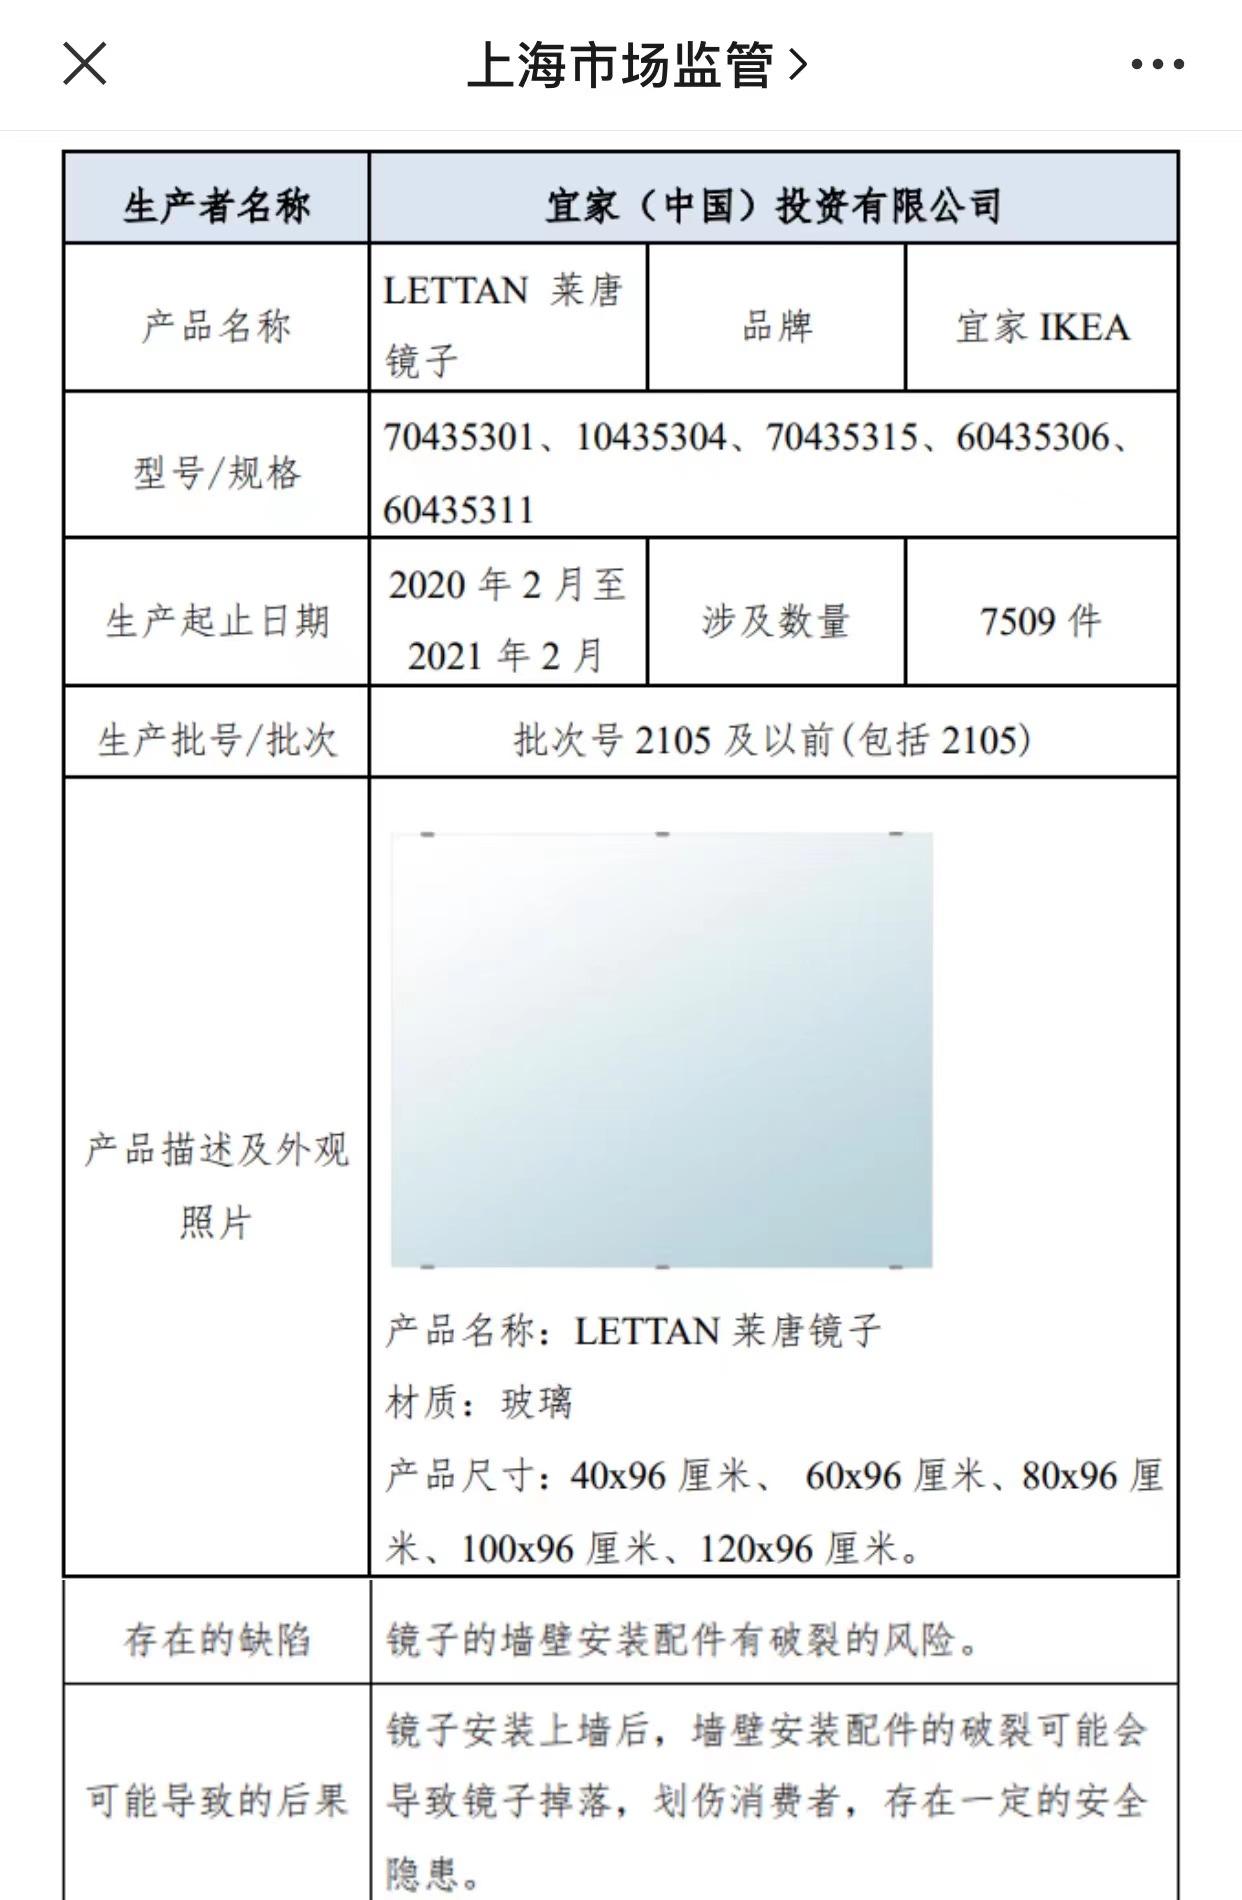 召回产品信息。图/上海市场监管微信号截图